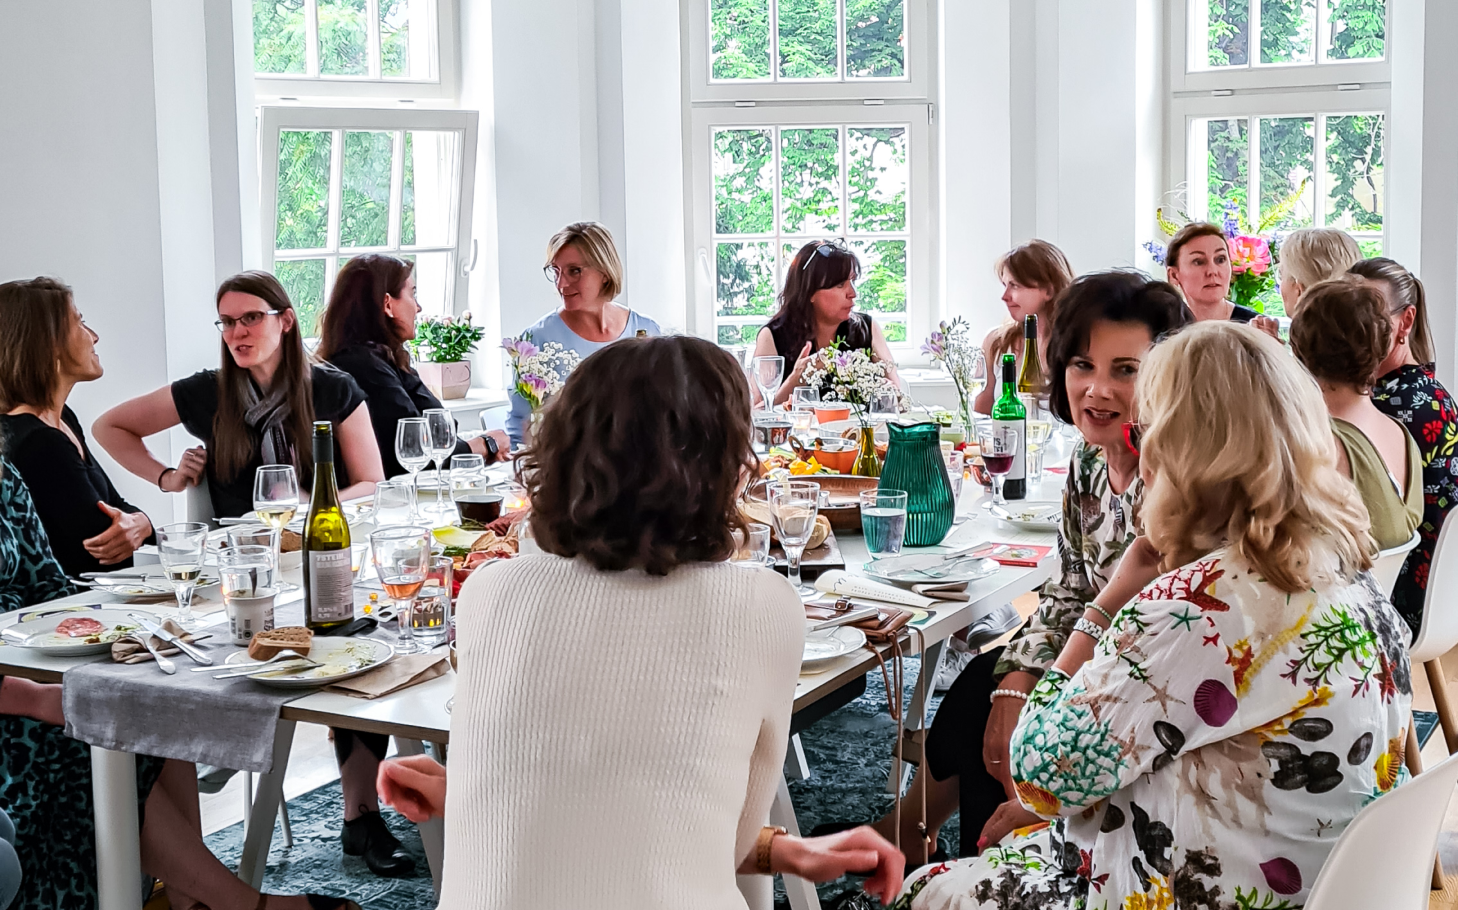 Frauen in tiefen Gruppen-Gesprächen am großen Tisch mit Soul-Food